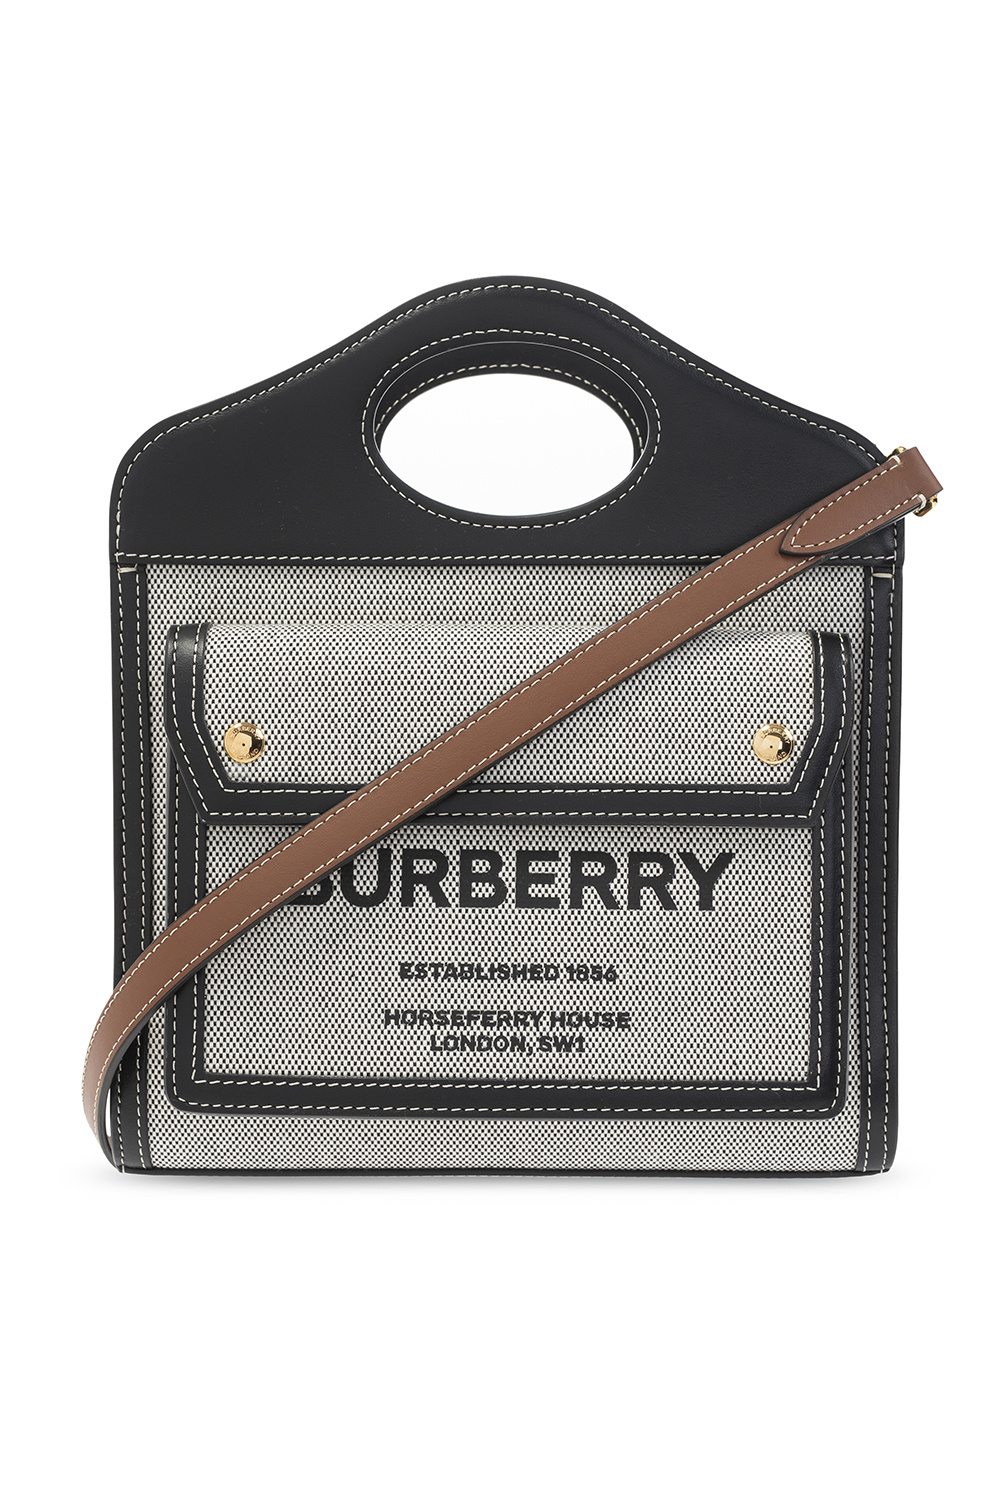 Pochette-cintura Burberry TB in tela monogram marrone e pelle nera